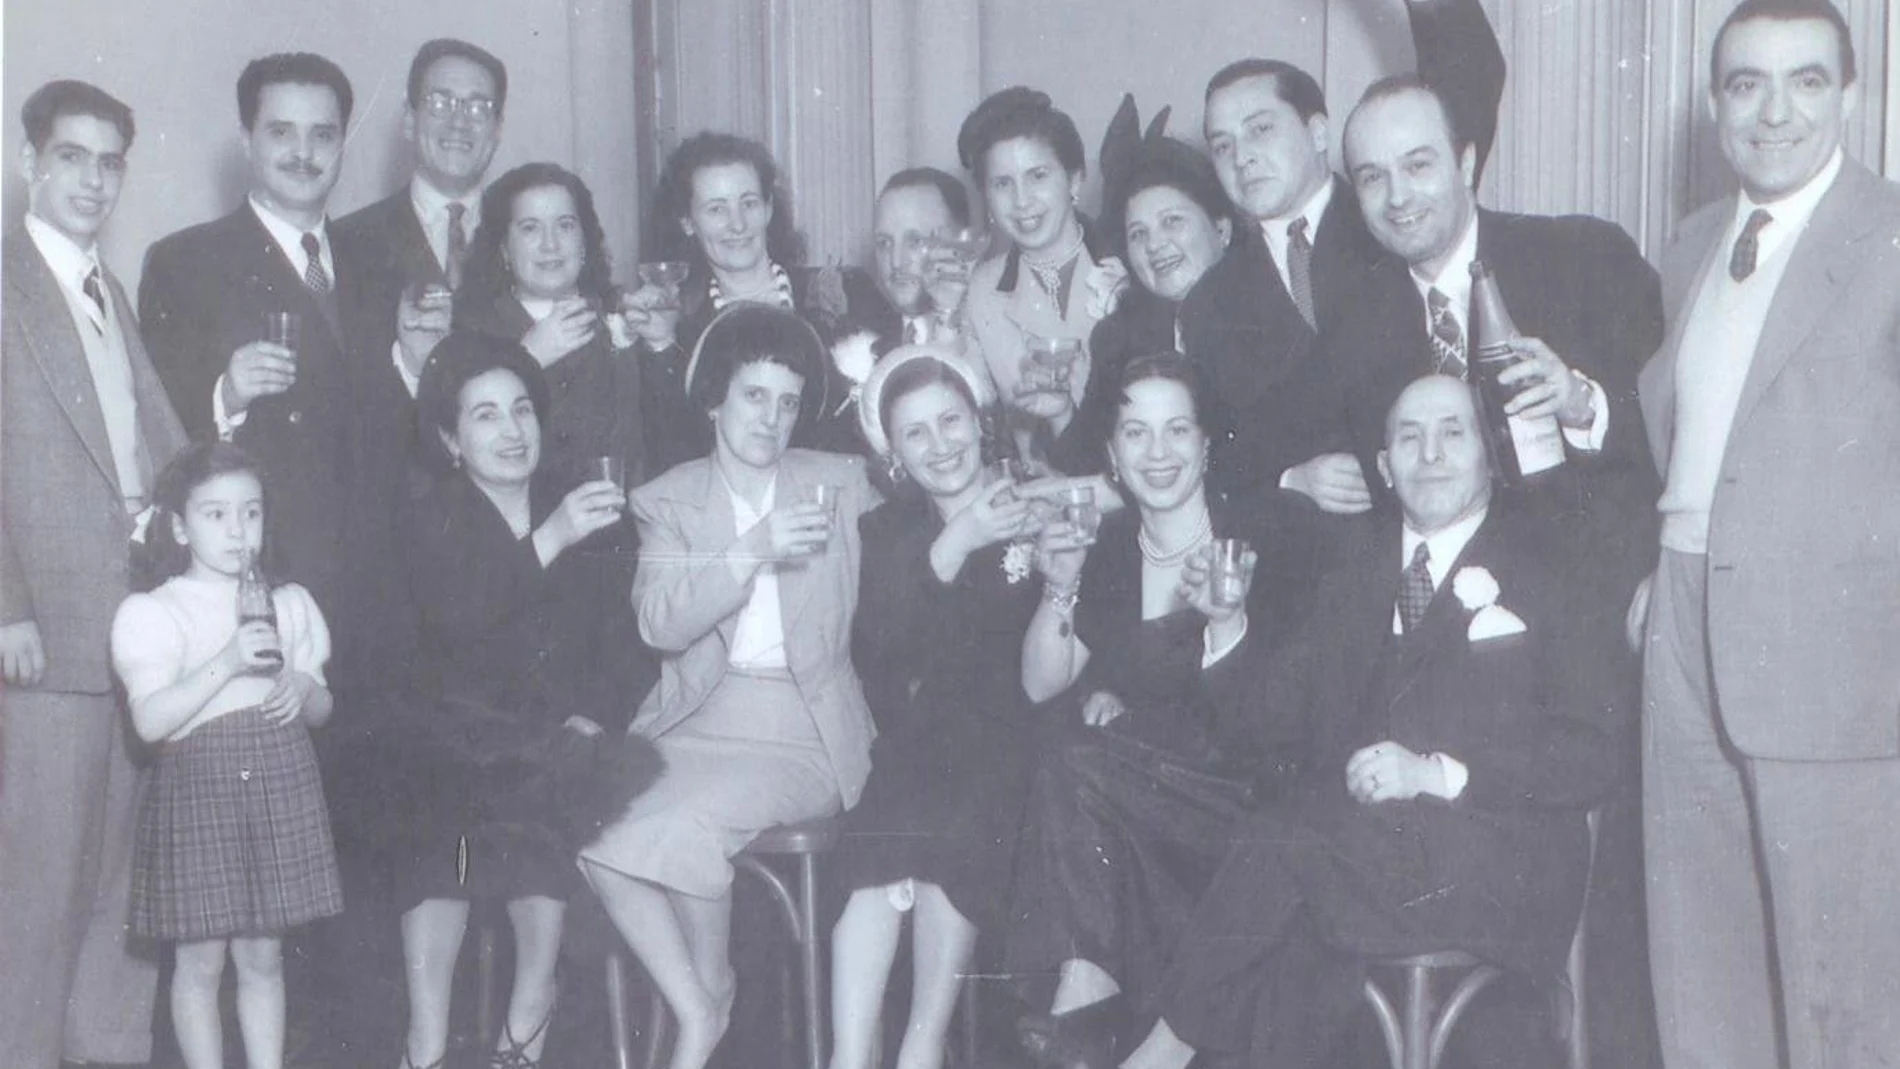 Una imagen de la boda de Aurora Perea, la mujer que aparece sentada sonriendo en el centro de la imagen. Ella fue la obsesión erótica de Josep Pla